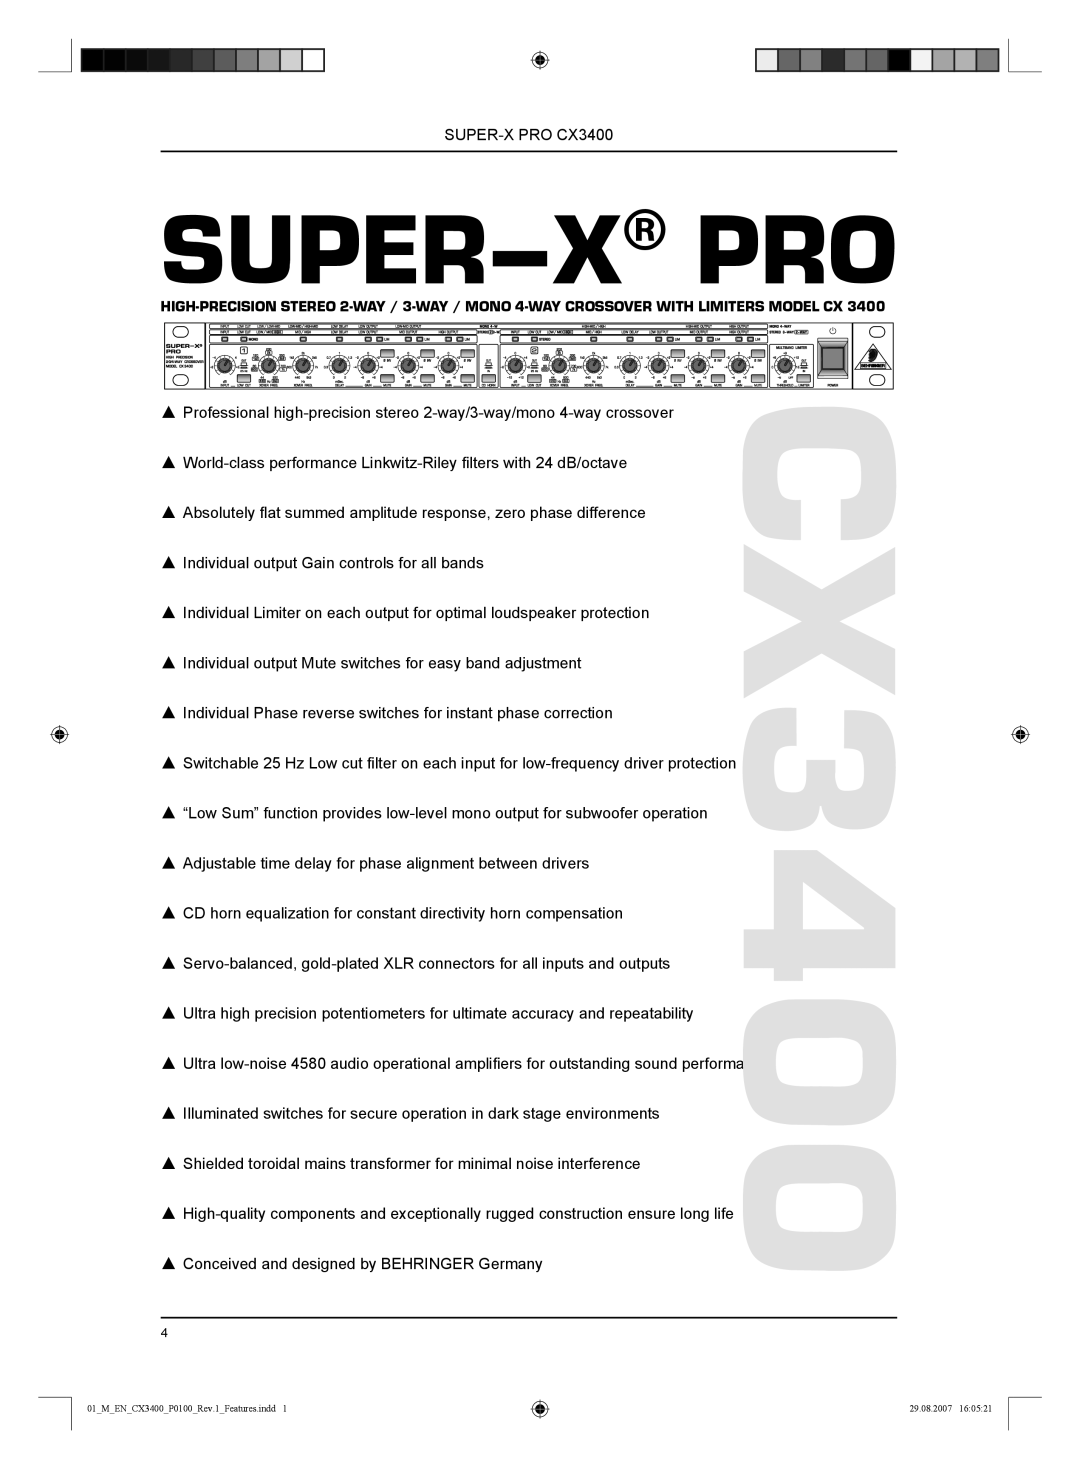 Behringer CX3400 manual Super-X Pro 